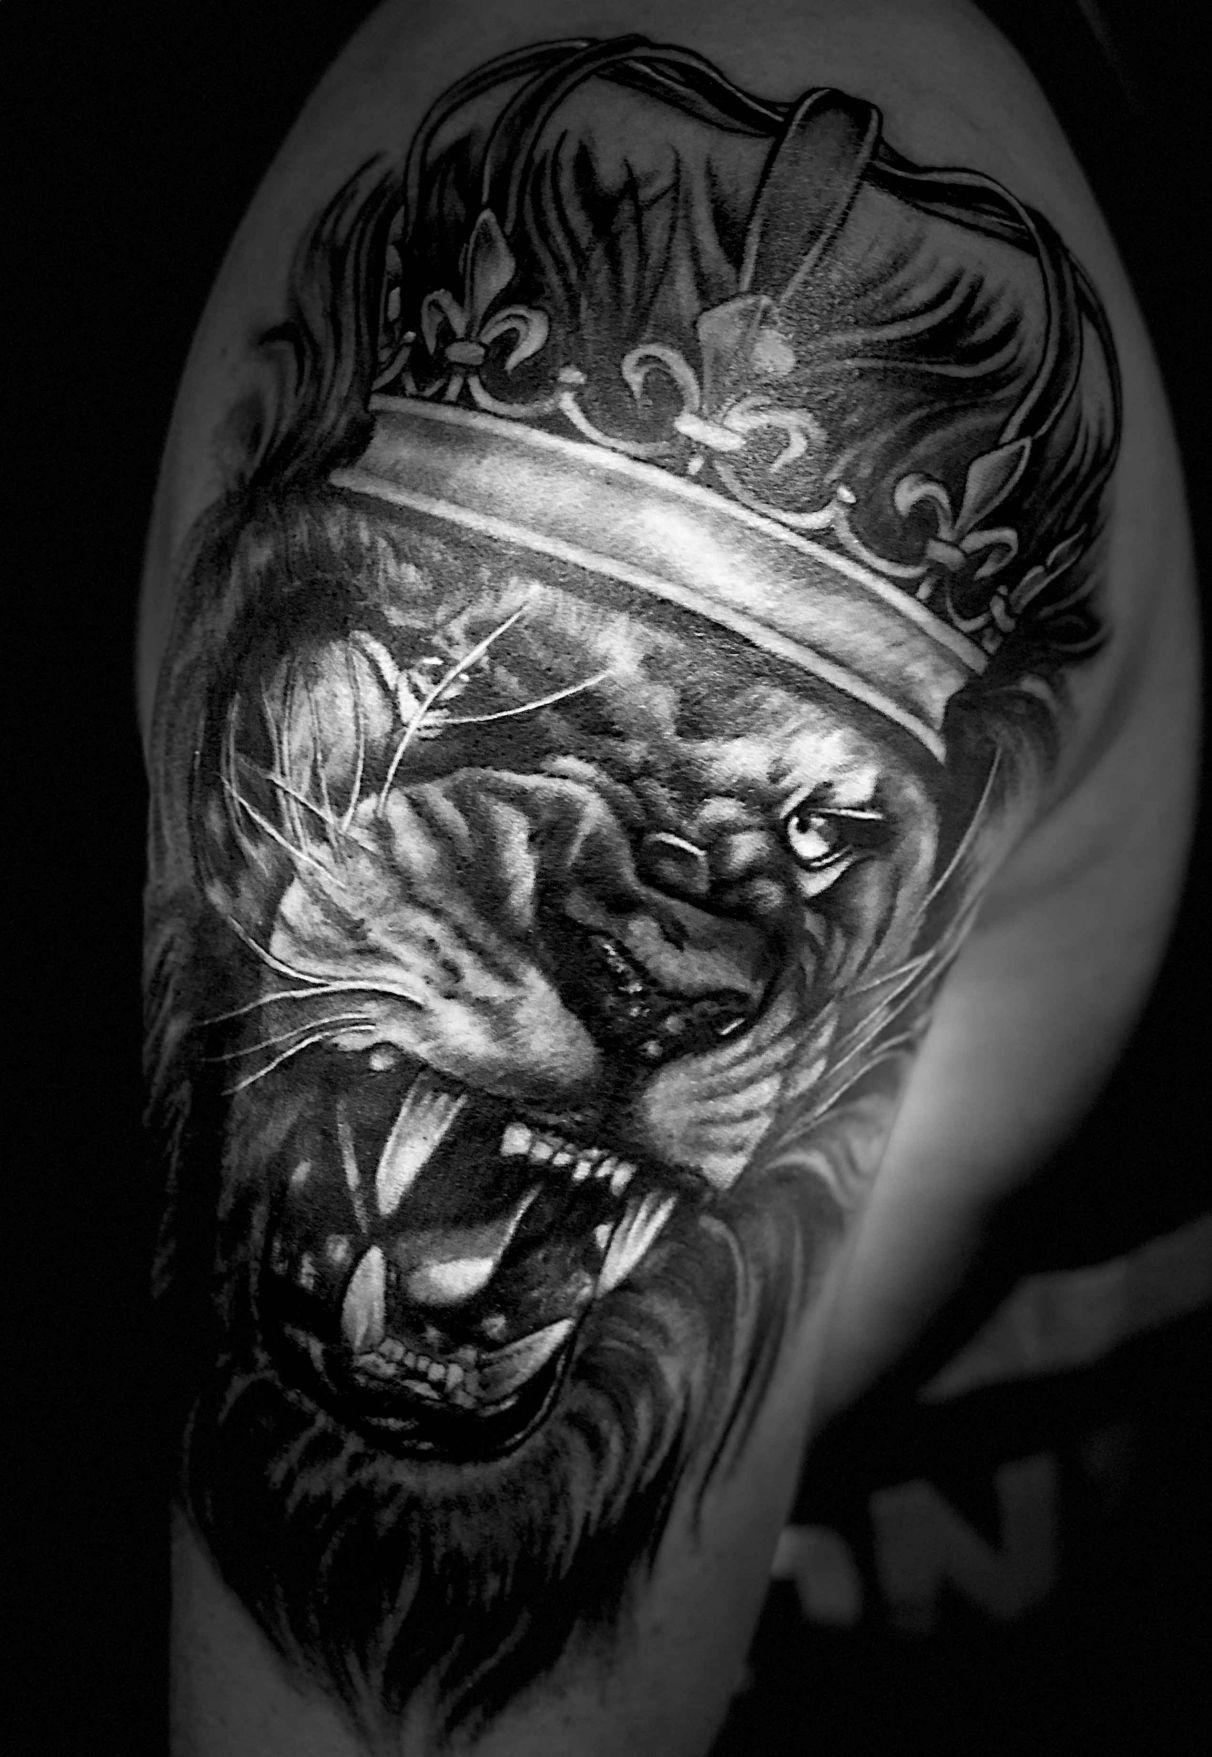  Tattoo-Design eines Löwen